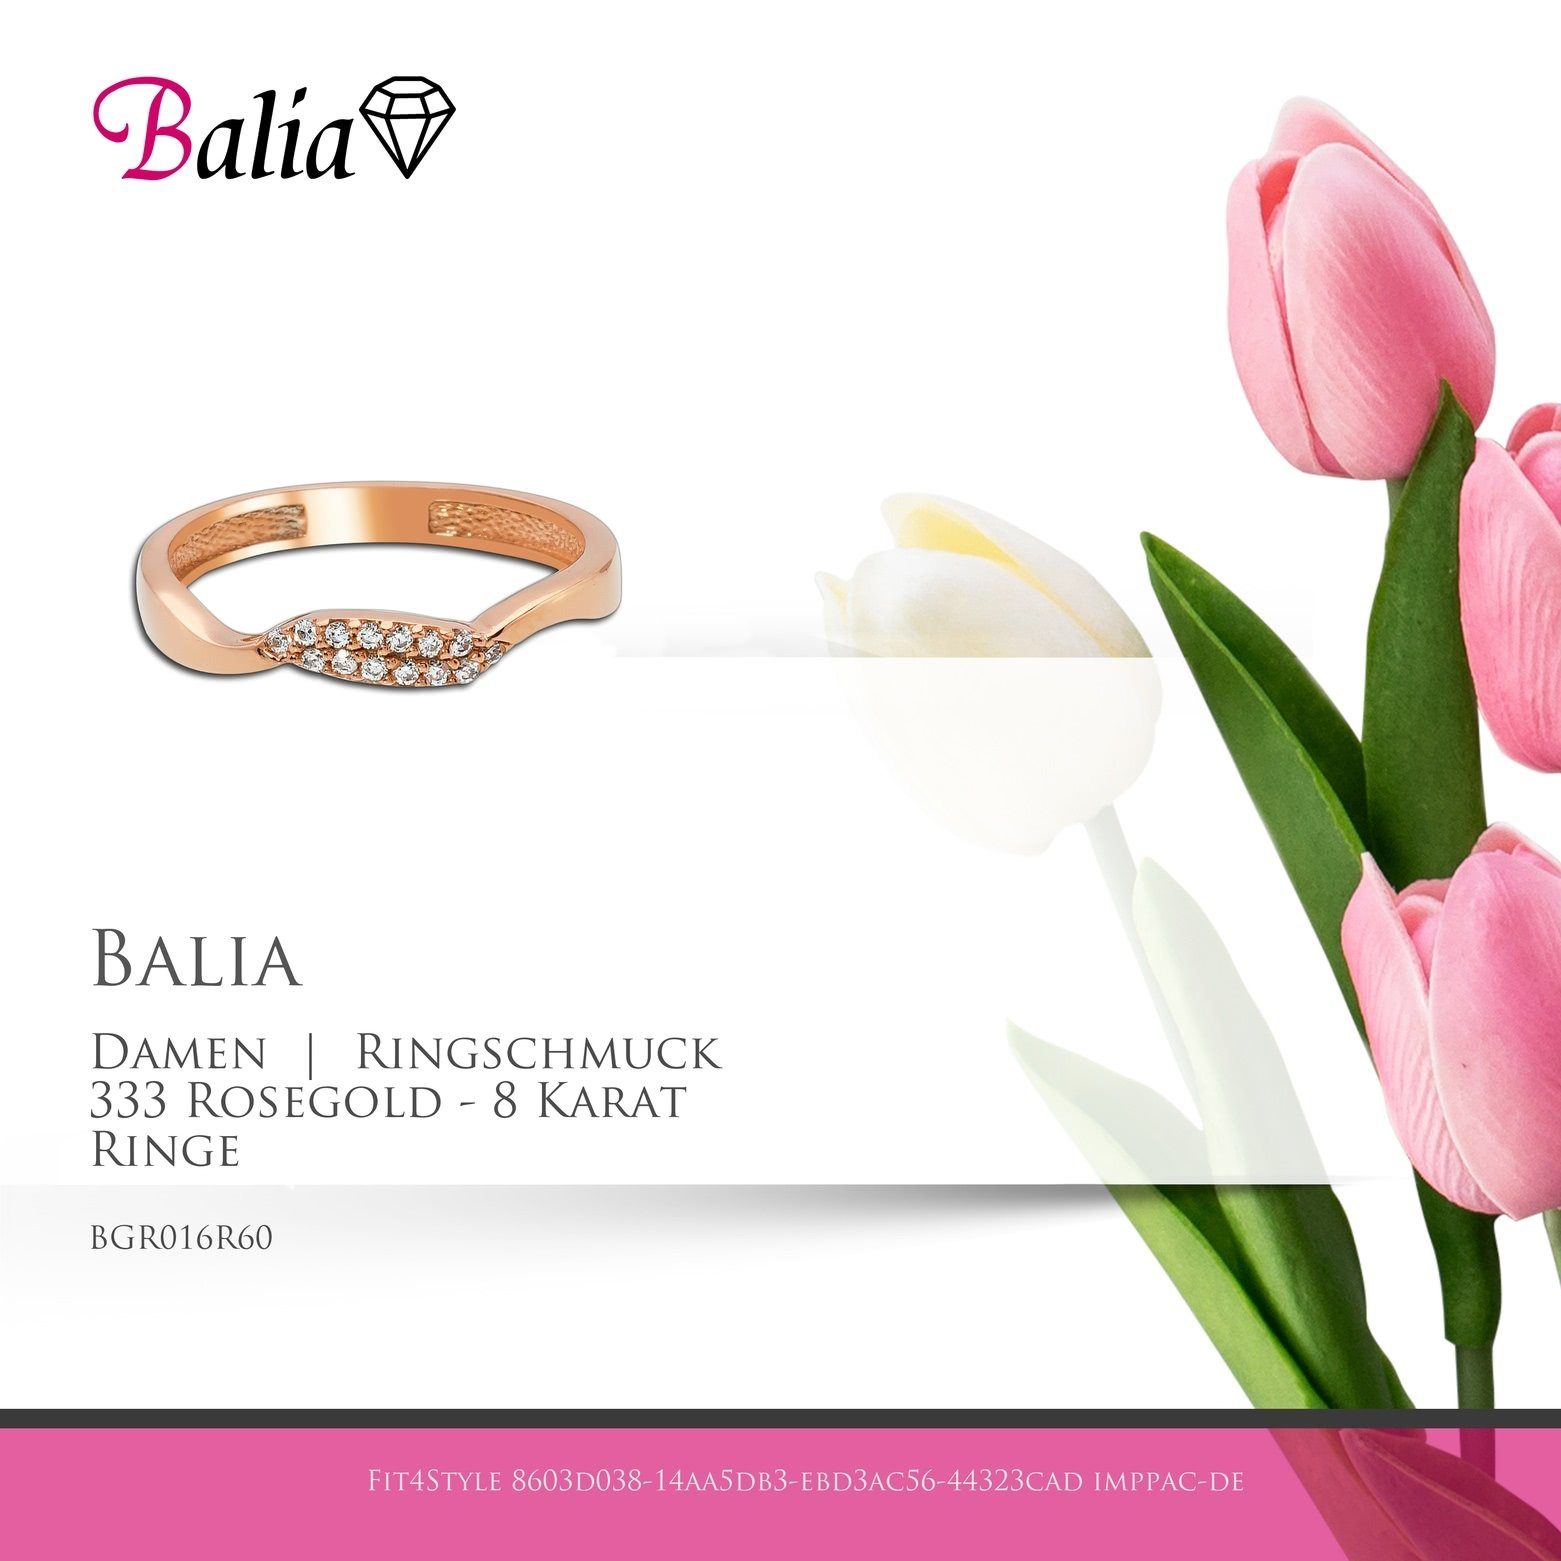 Balia Goldring Welle, Karat 333 Ring (19,1) - Damen 8 (Fingerring), 8Kt Rosegold Ringe, 60 Damen Gold Gr.60 Welle Balia